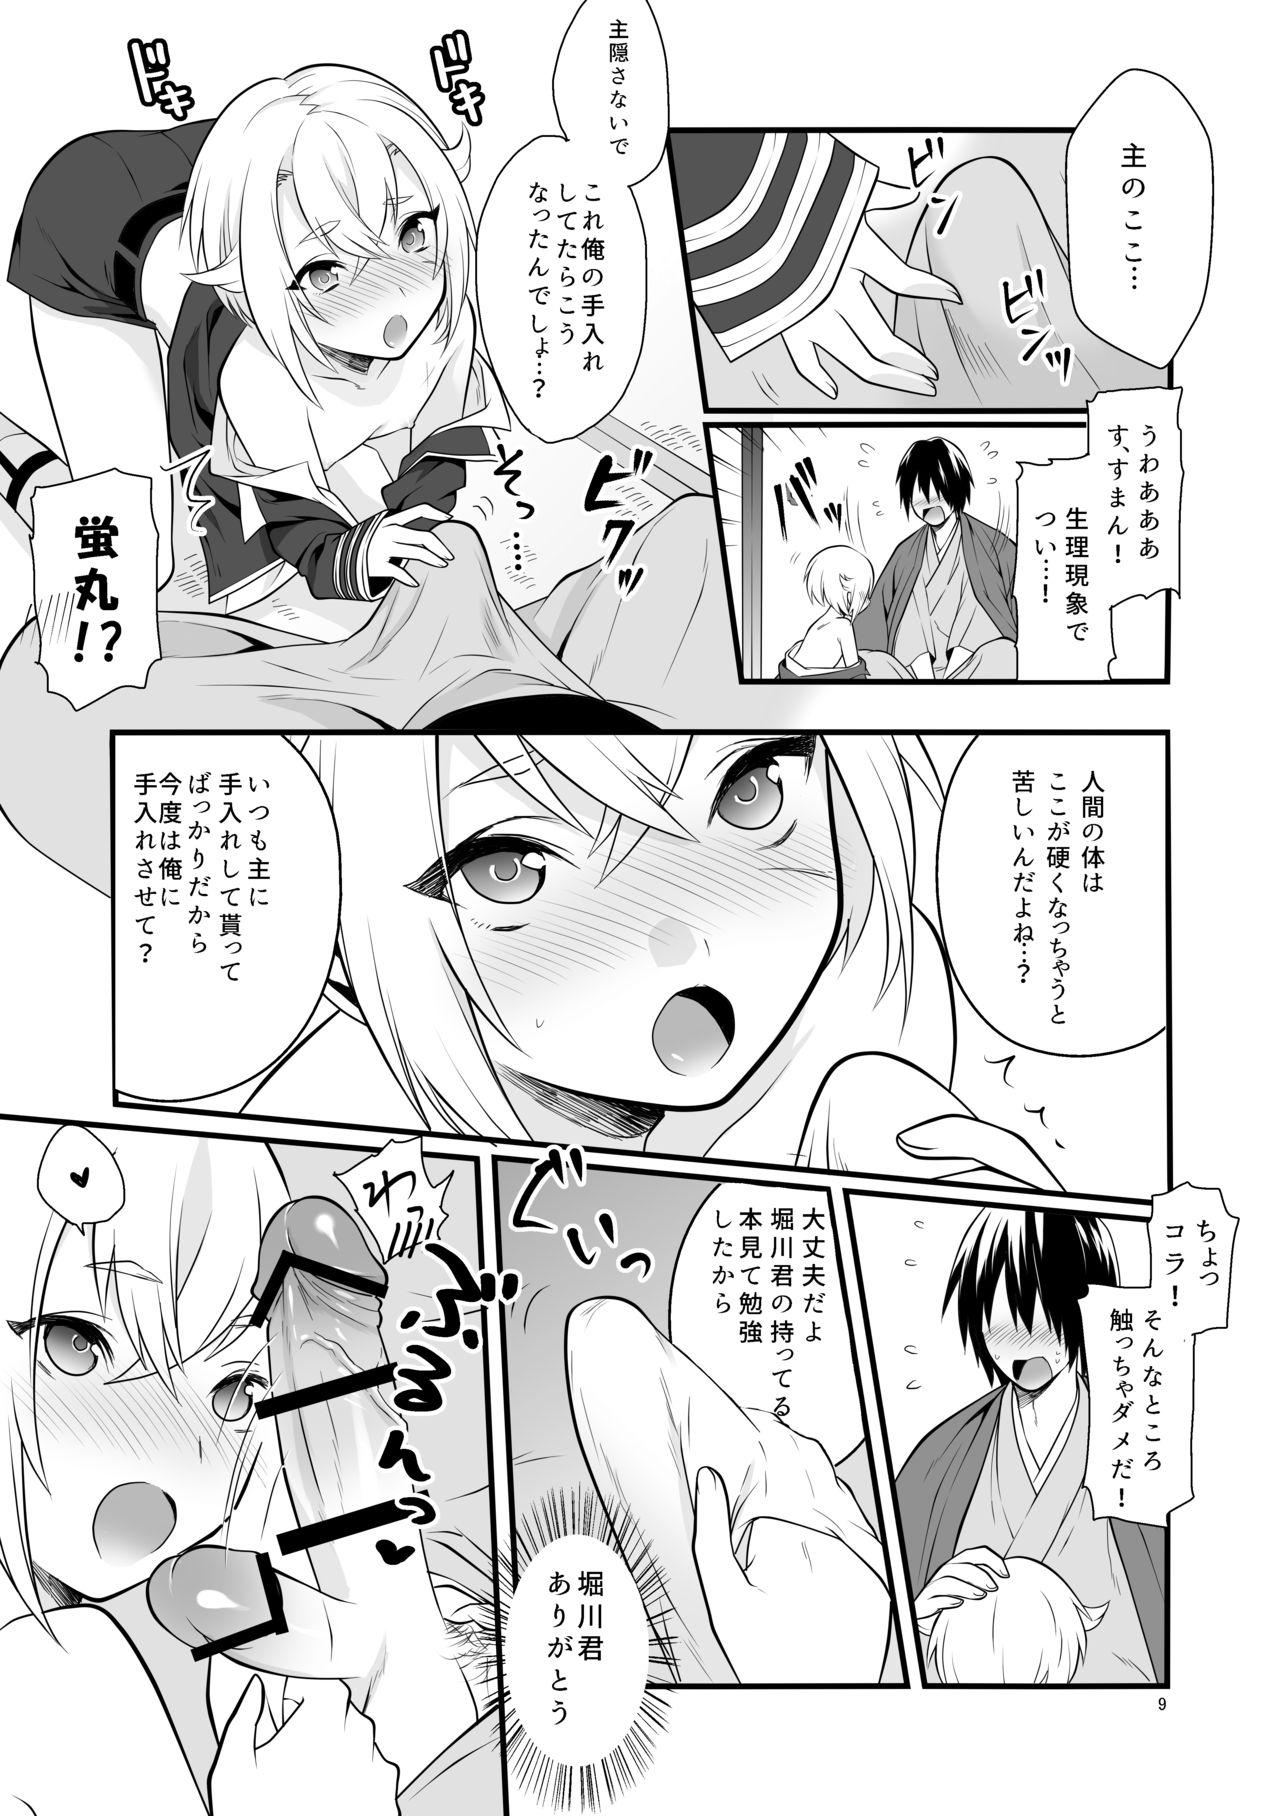 Cavalgando Hajimete no Hotarumaru - Touken ranbu White Chick - Page 10